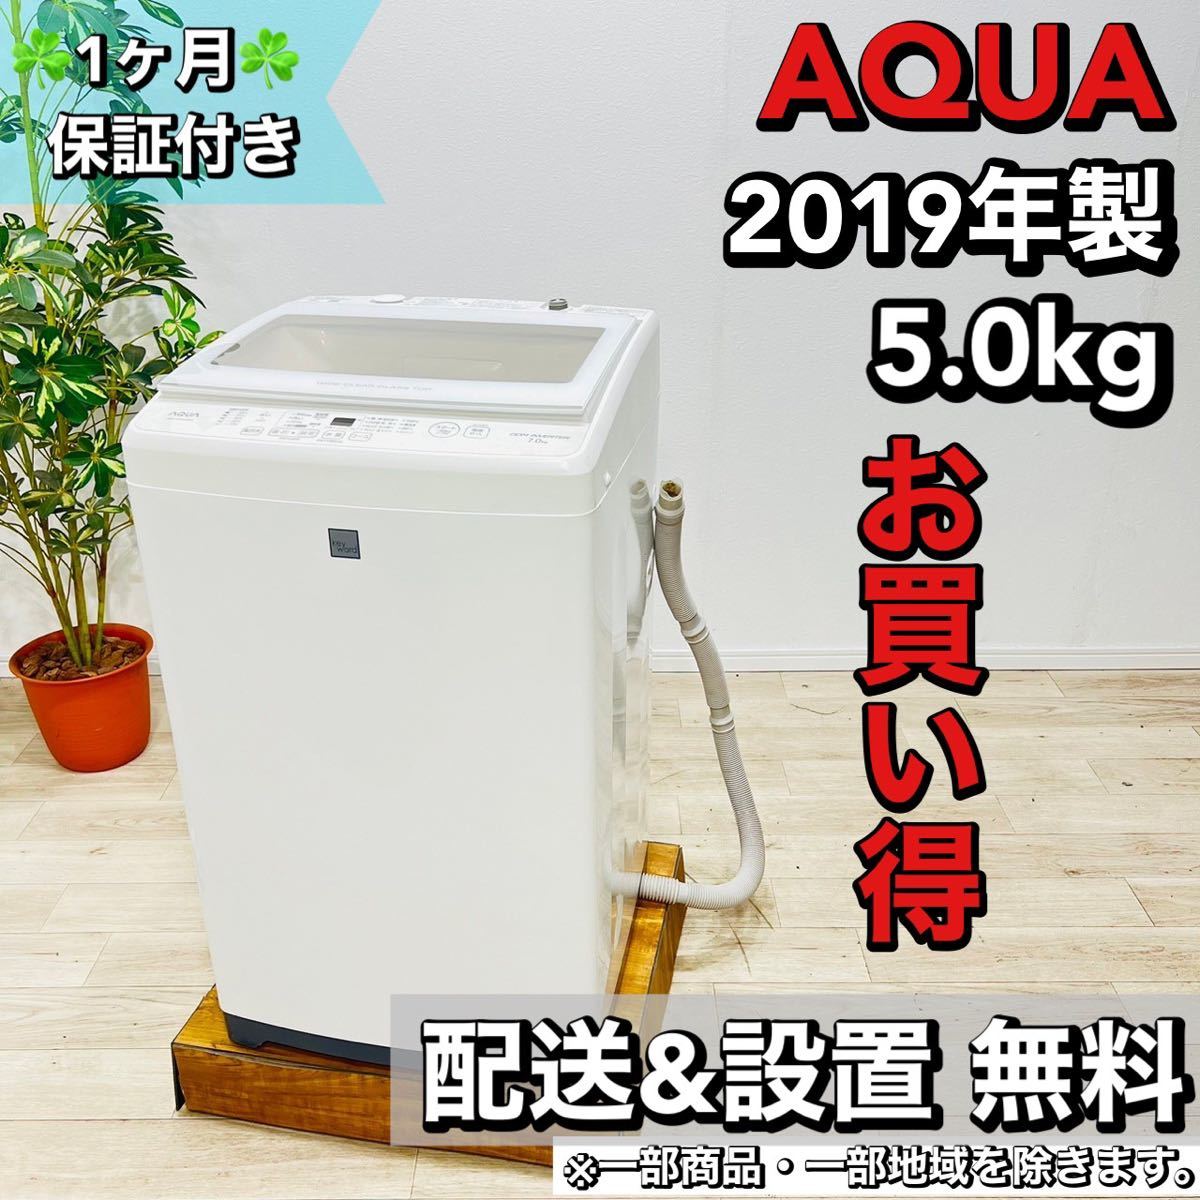 ♦️AQUA a1598 洗濯機 7.0kg 2019年製 5.5♦️-